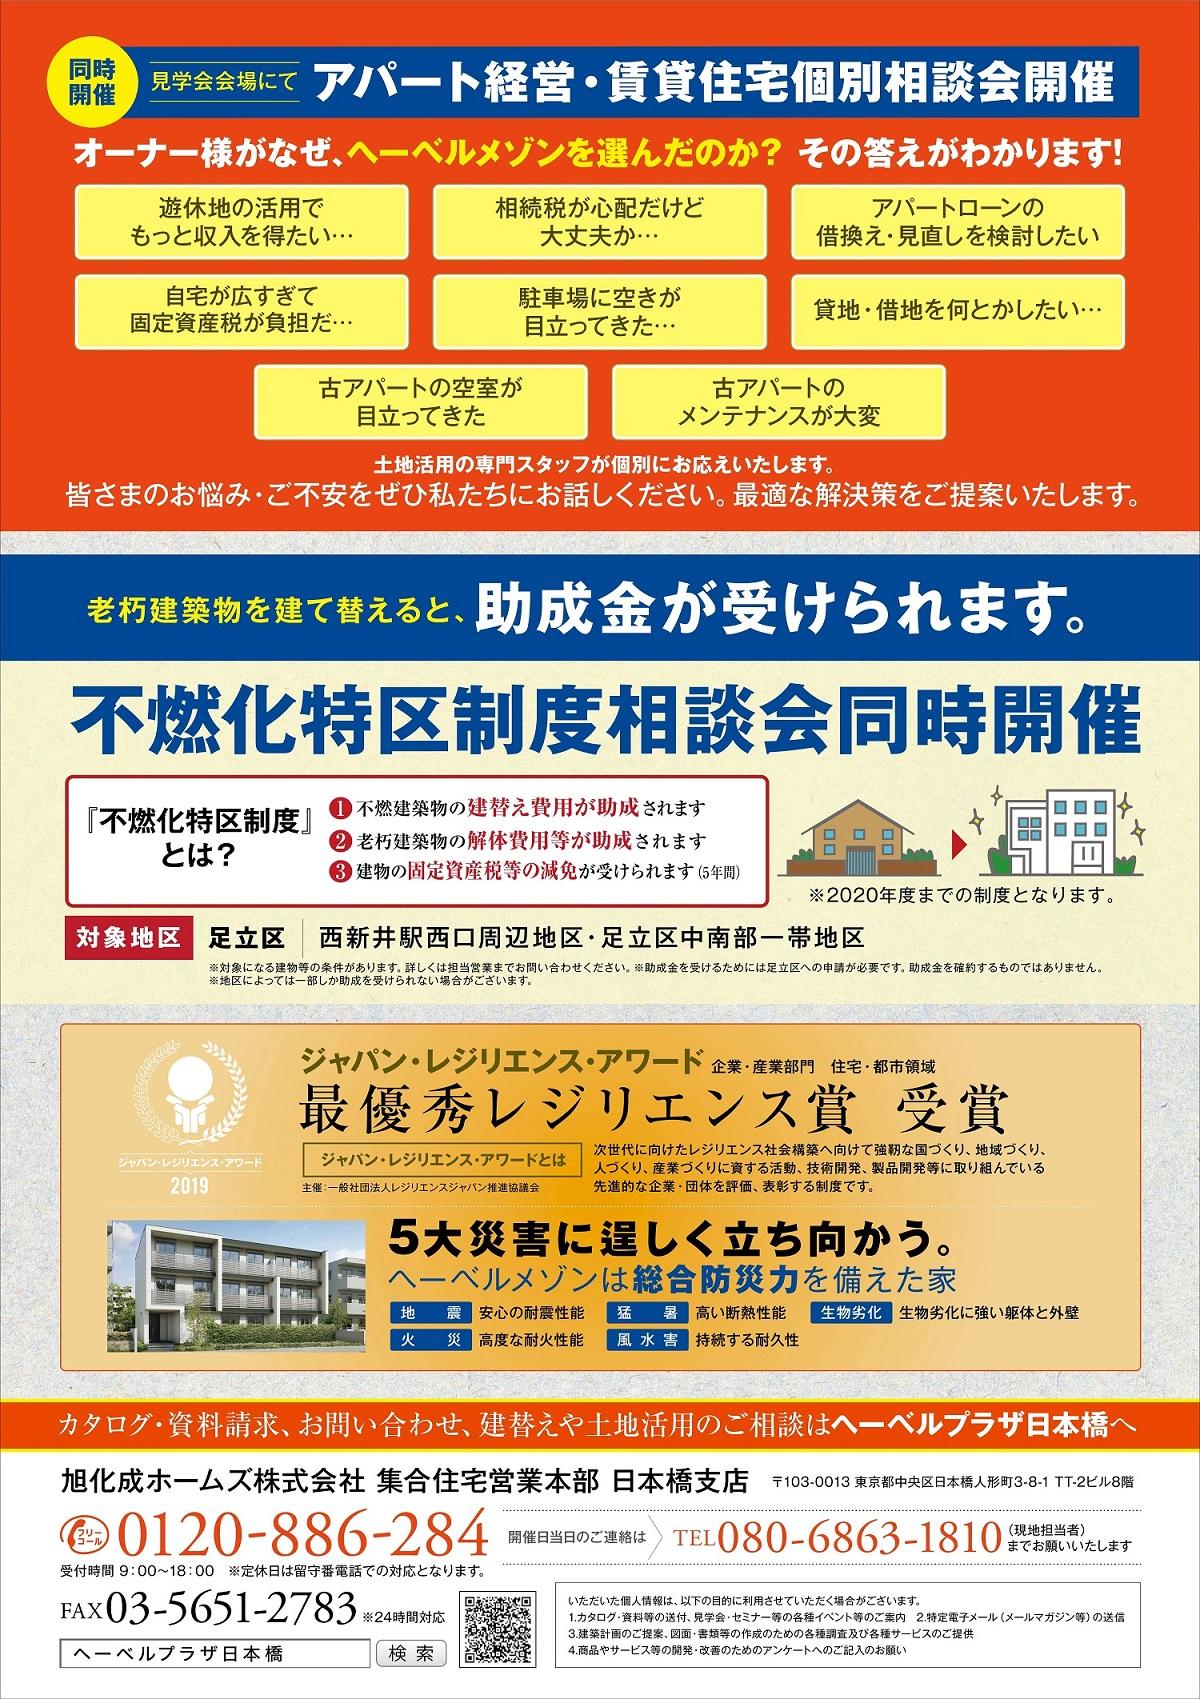 https://www.asahi-kasei.co.jp/maison/hebelplaza/blog/18/nihonbashi/item/2020/200127_2.jpg